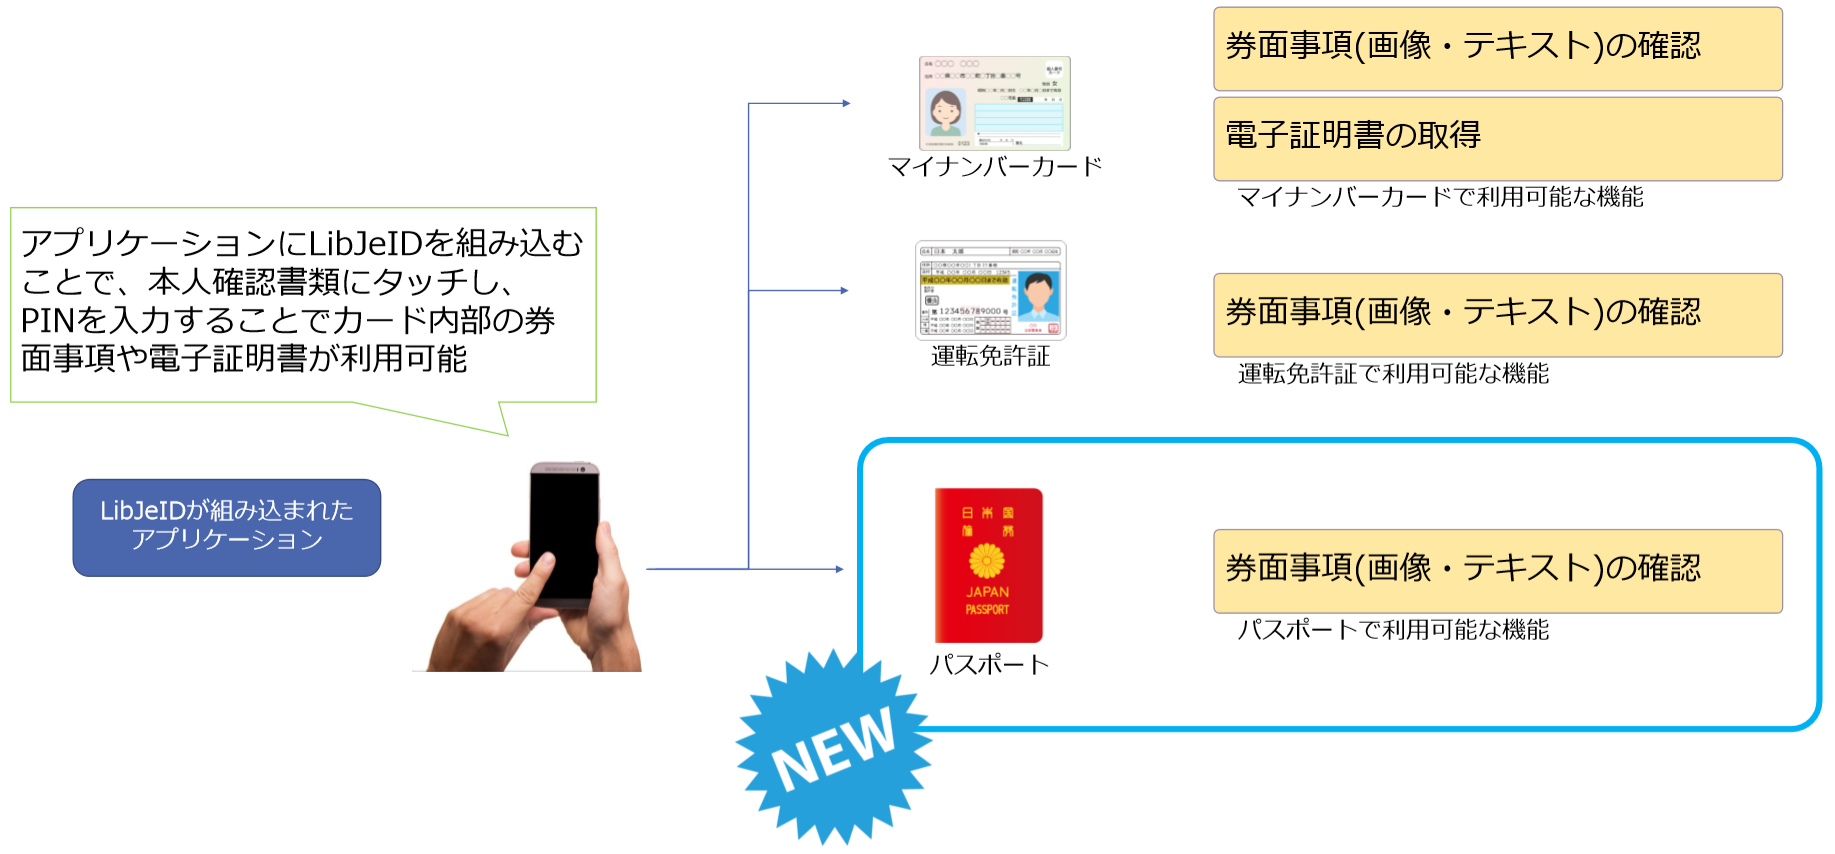 本人確認書類のicチップをスマホのnfcで読み取るライブラリ Libjeid がパスポート 日本国旅券 に対応 Osstech株式会社のプレスリリース